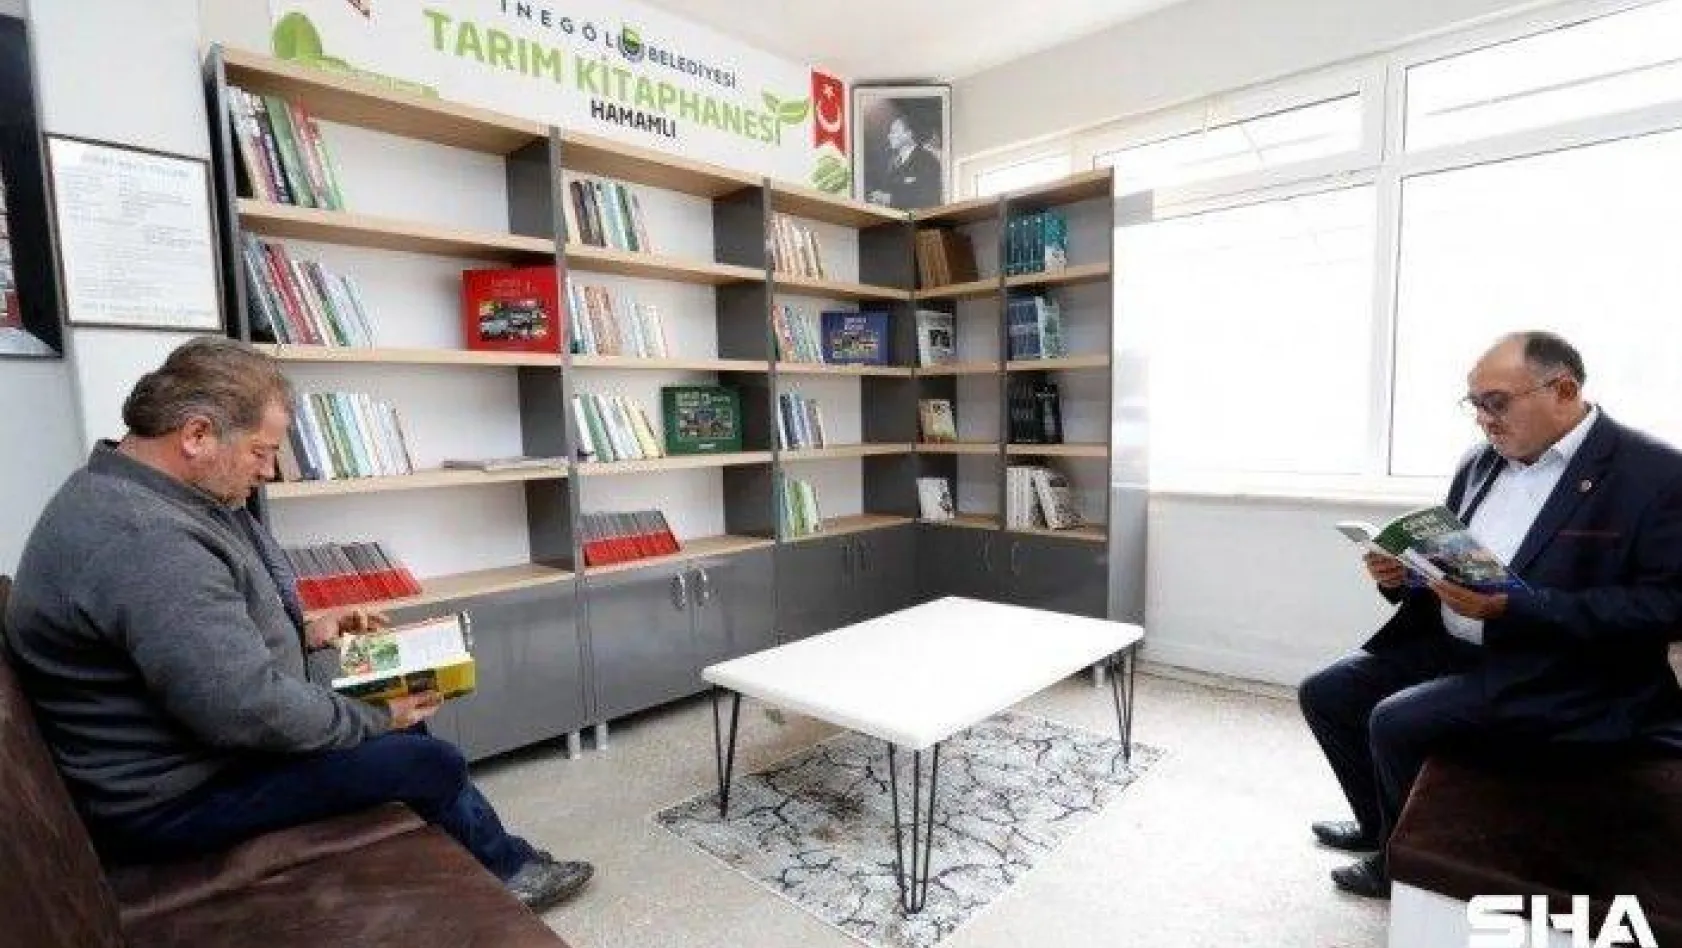 Türkiye'nin ilk tarım kütüphanesi açıldı